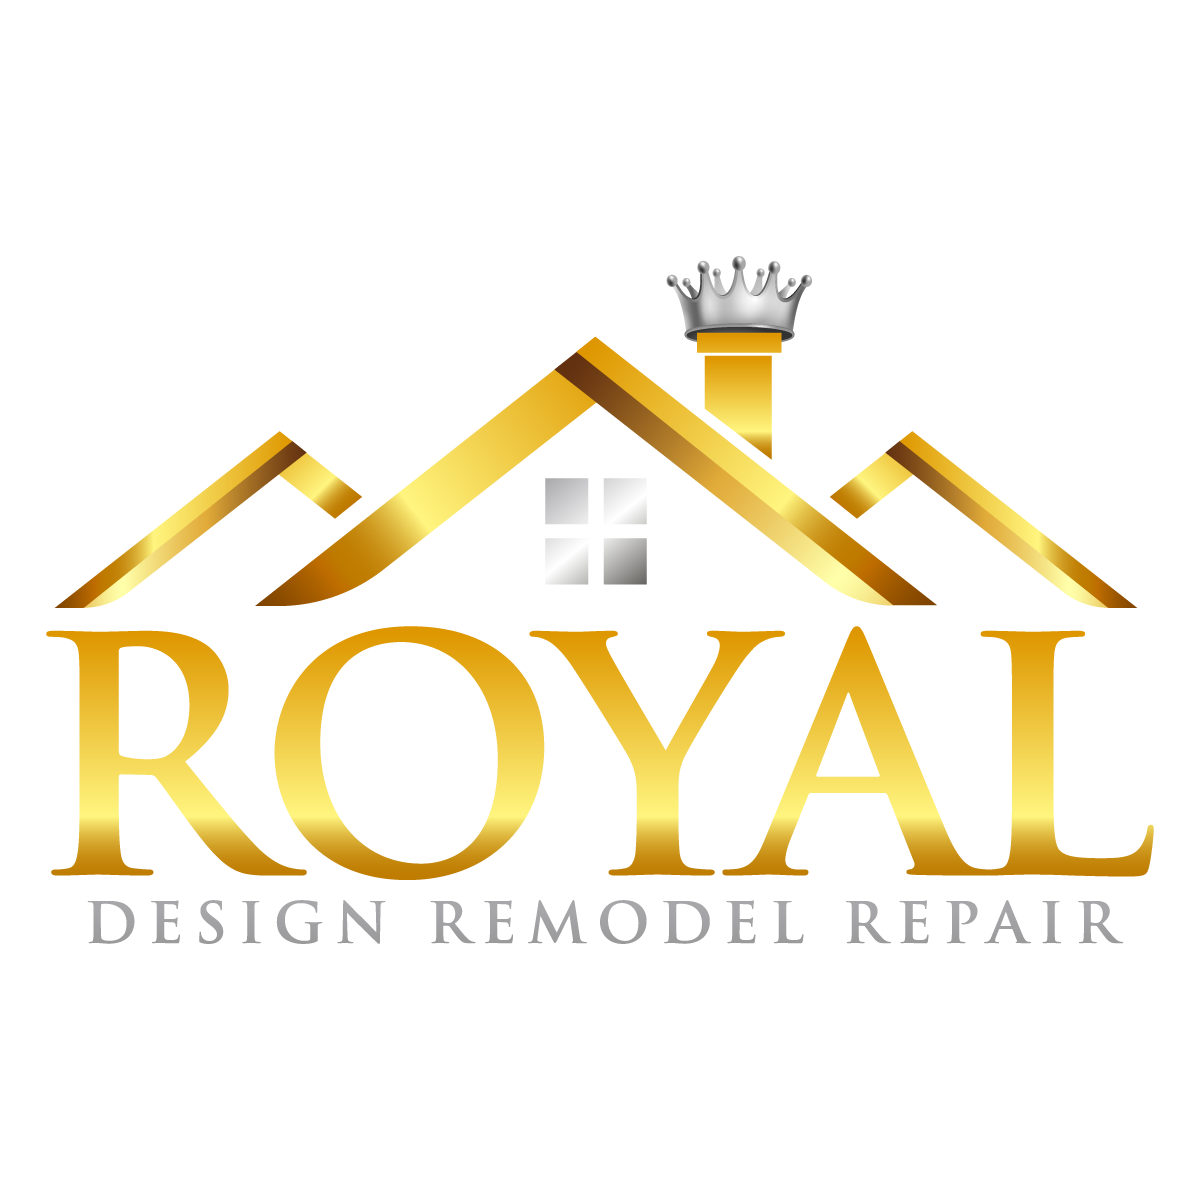 Royal Design Remodel Repair Logo